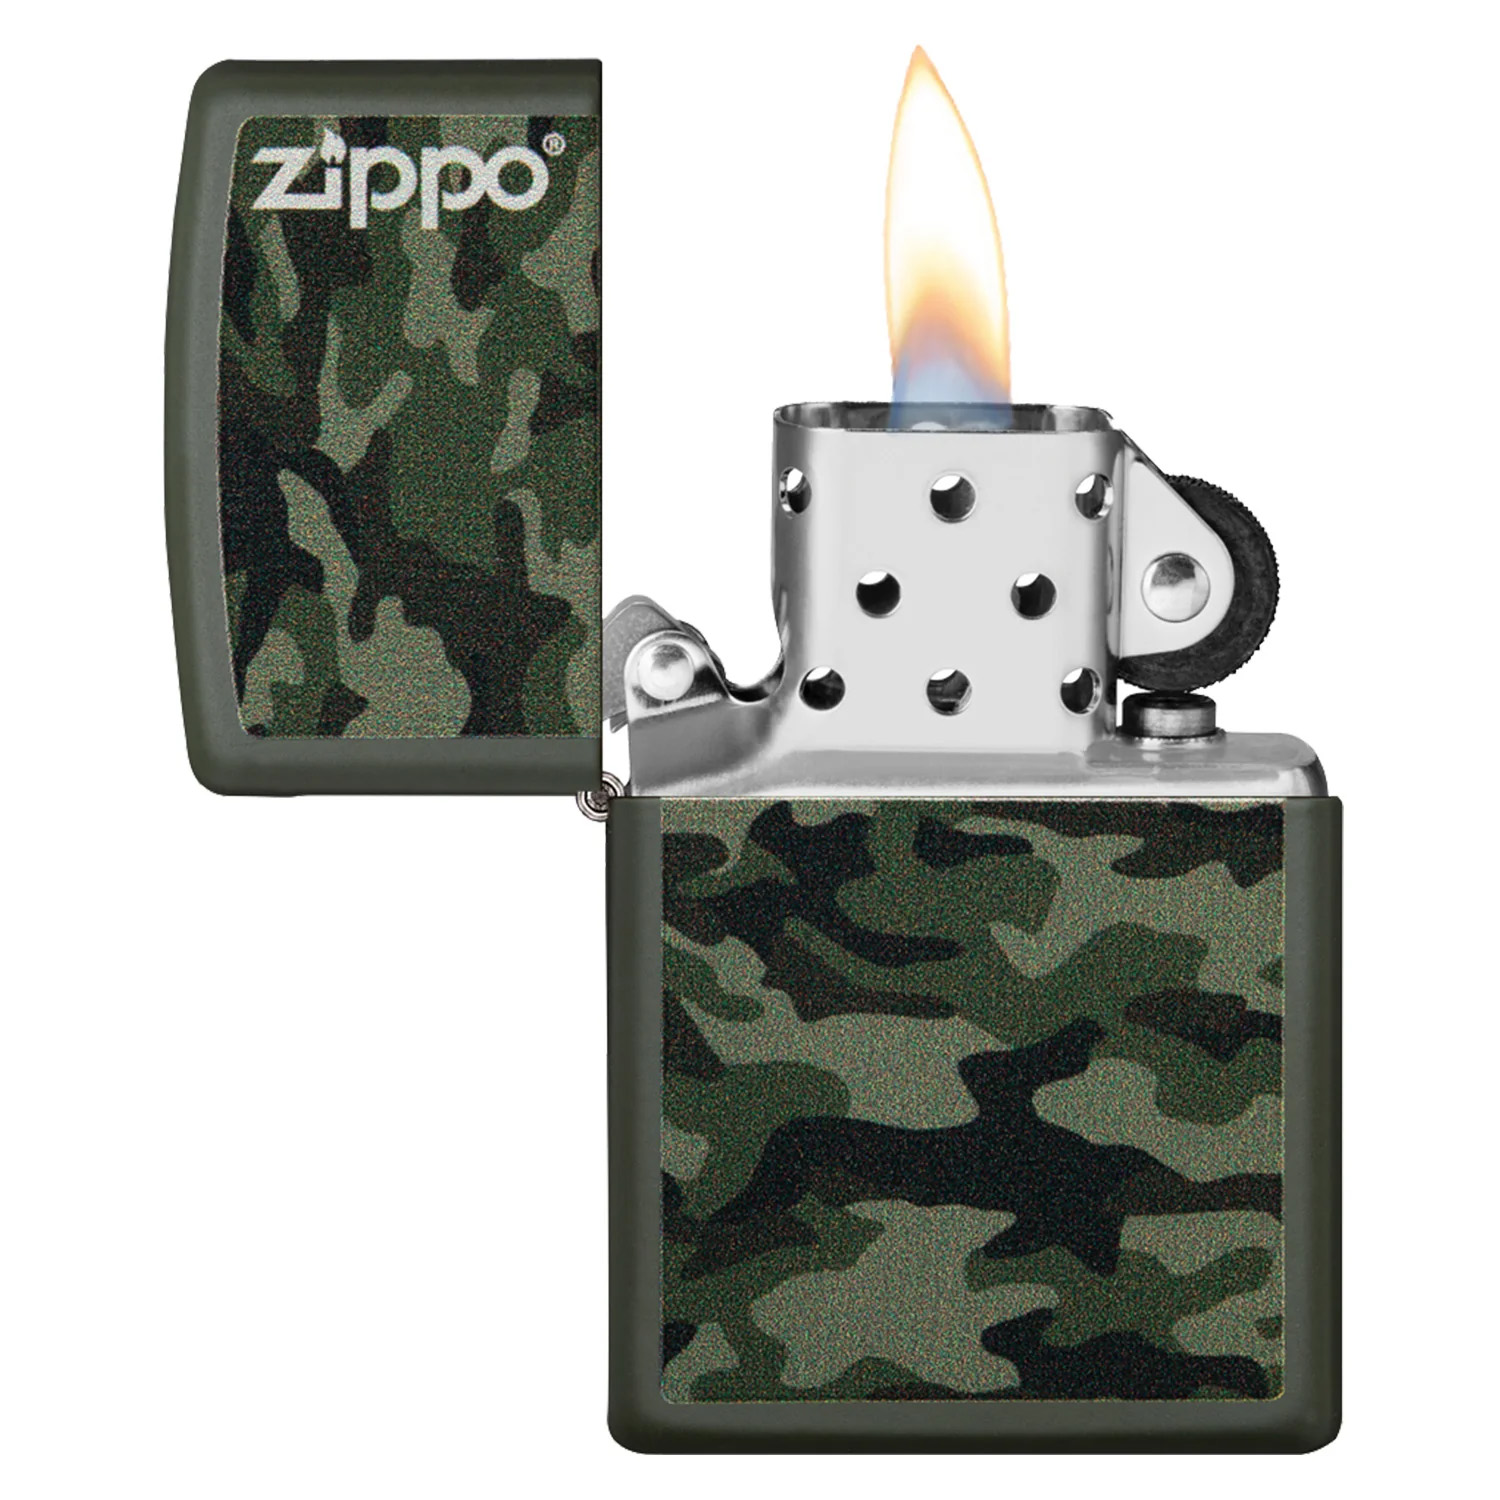 Zippo Aansteker Camo and Zippo Design 2